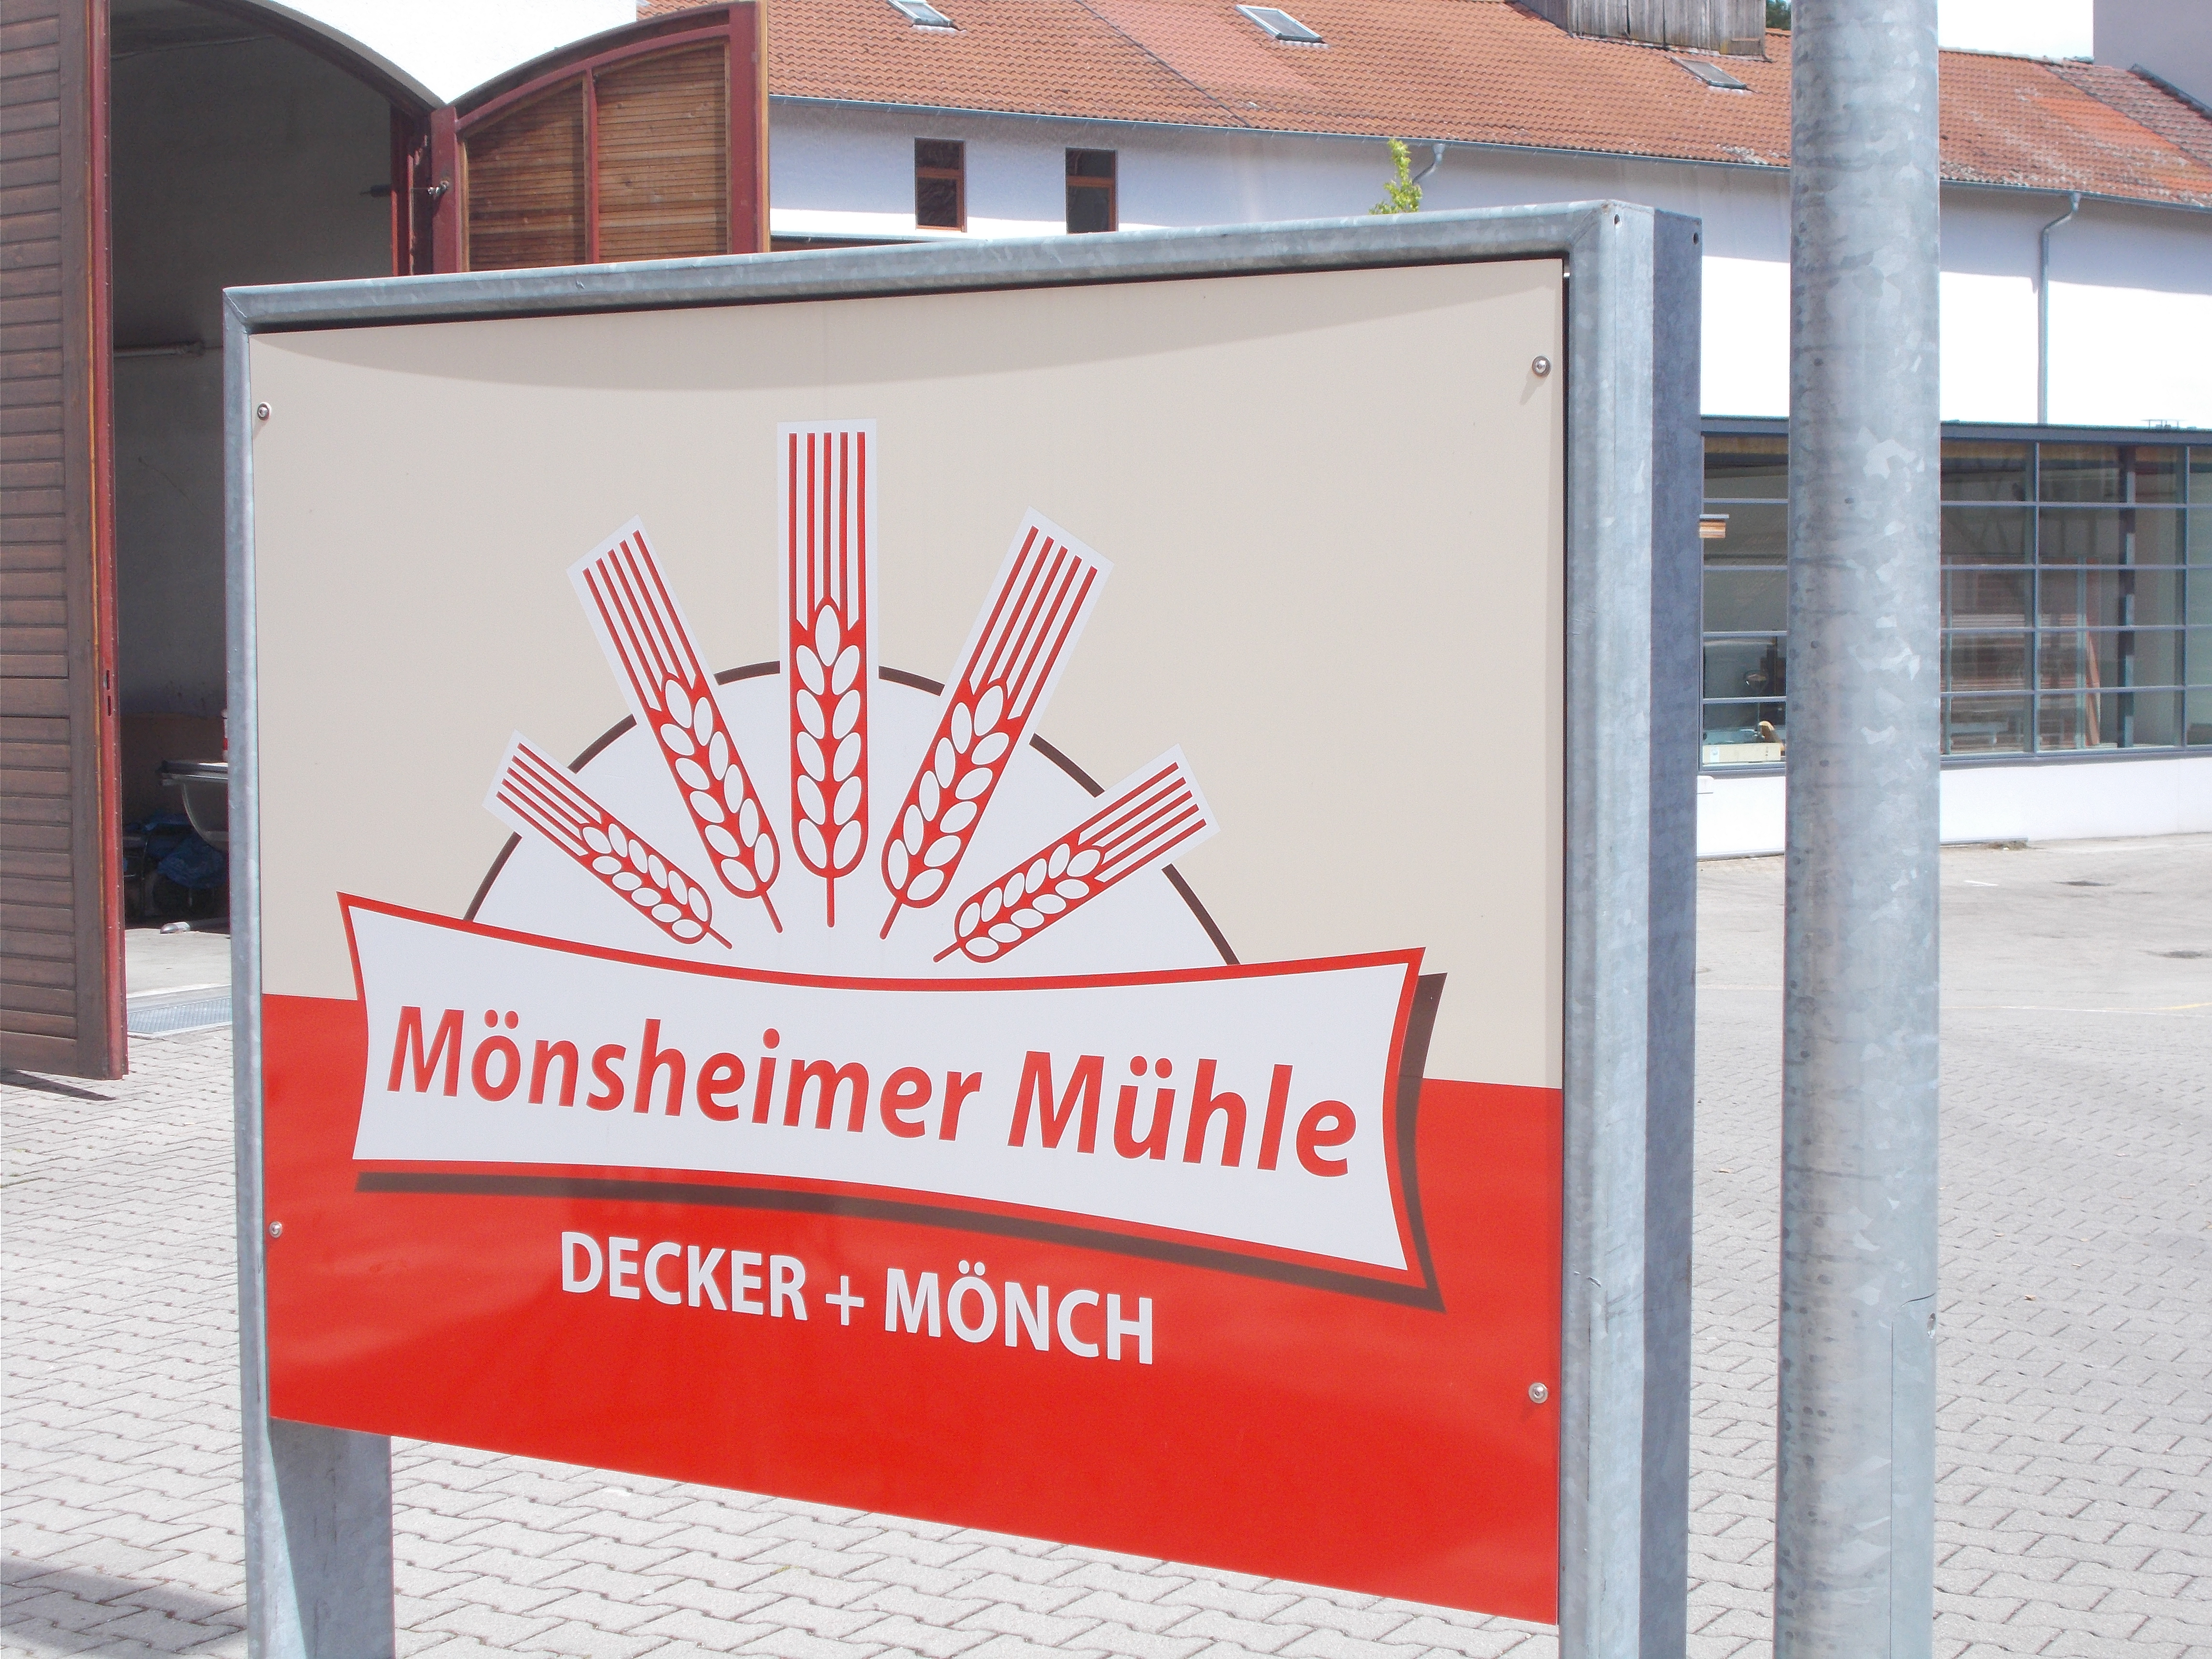 Bild 1 Mönsheimer Mühle Decker und Mönch GmbH & Co. KG in Mönsheim